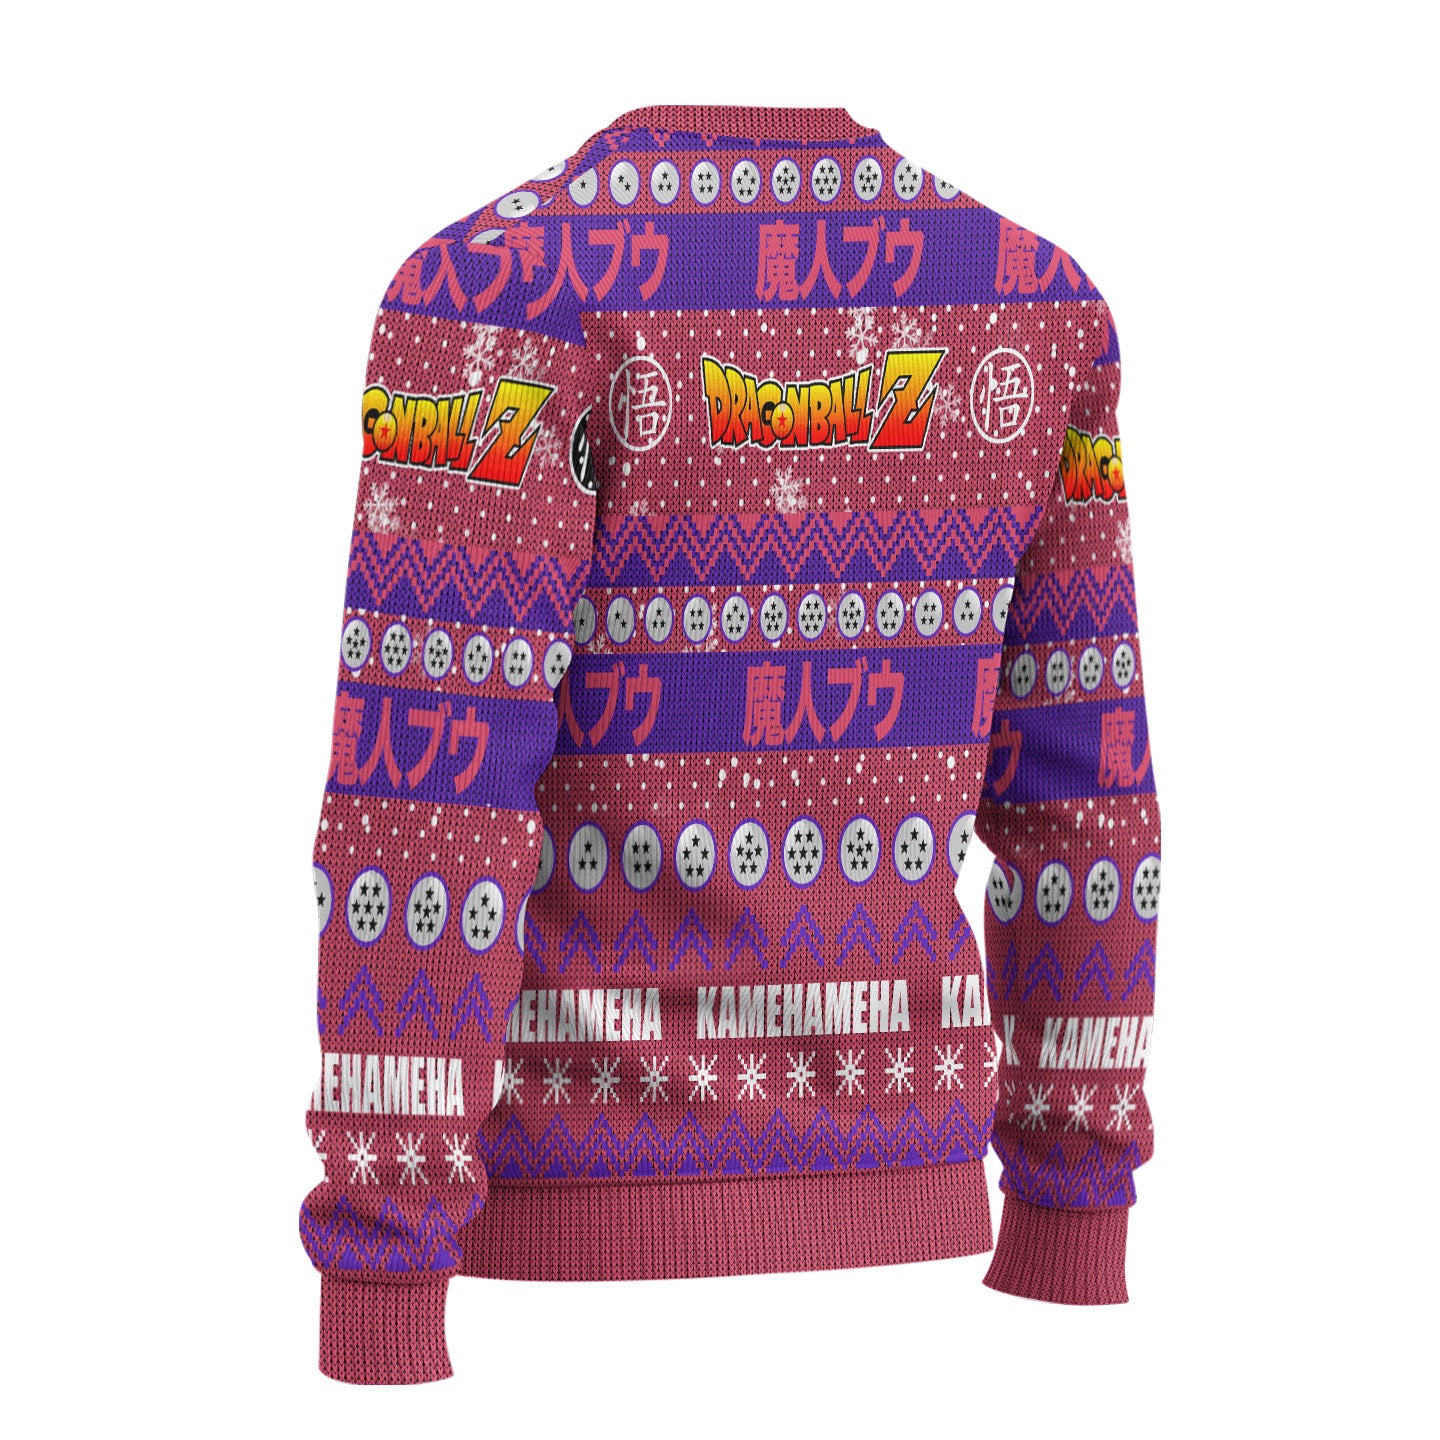 Majin Buu Anime Ugly Christmas Sweater Dragon Ball Z New Design